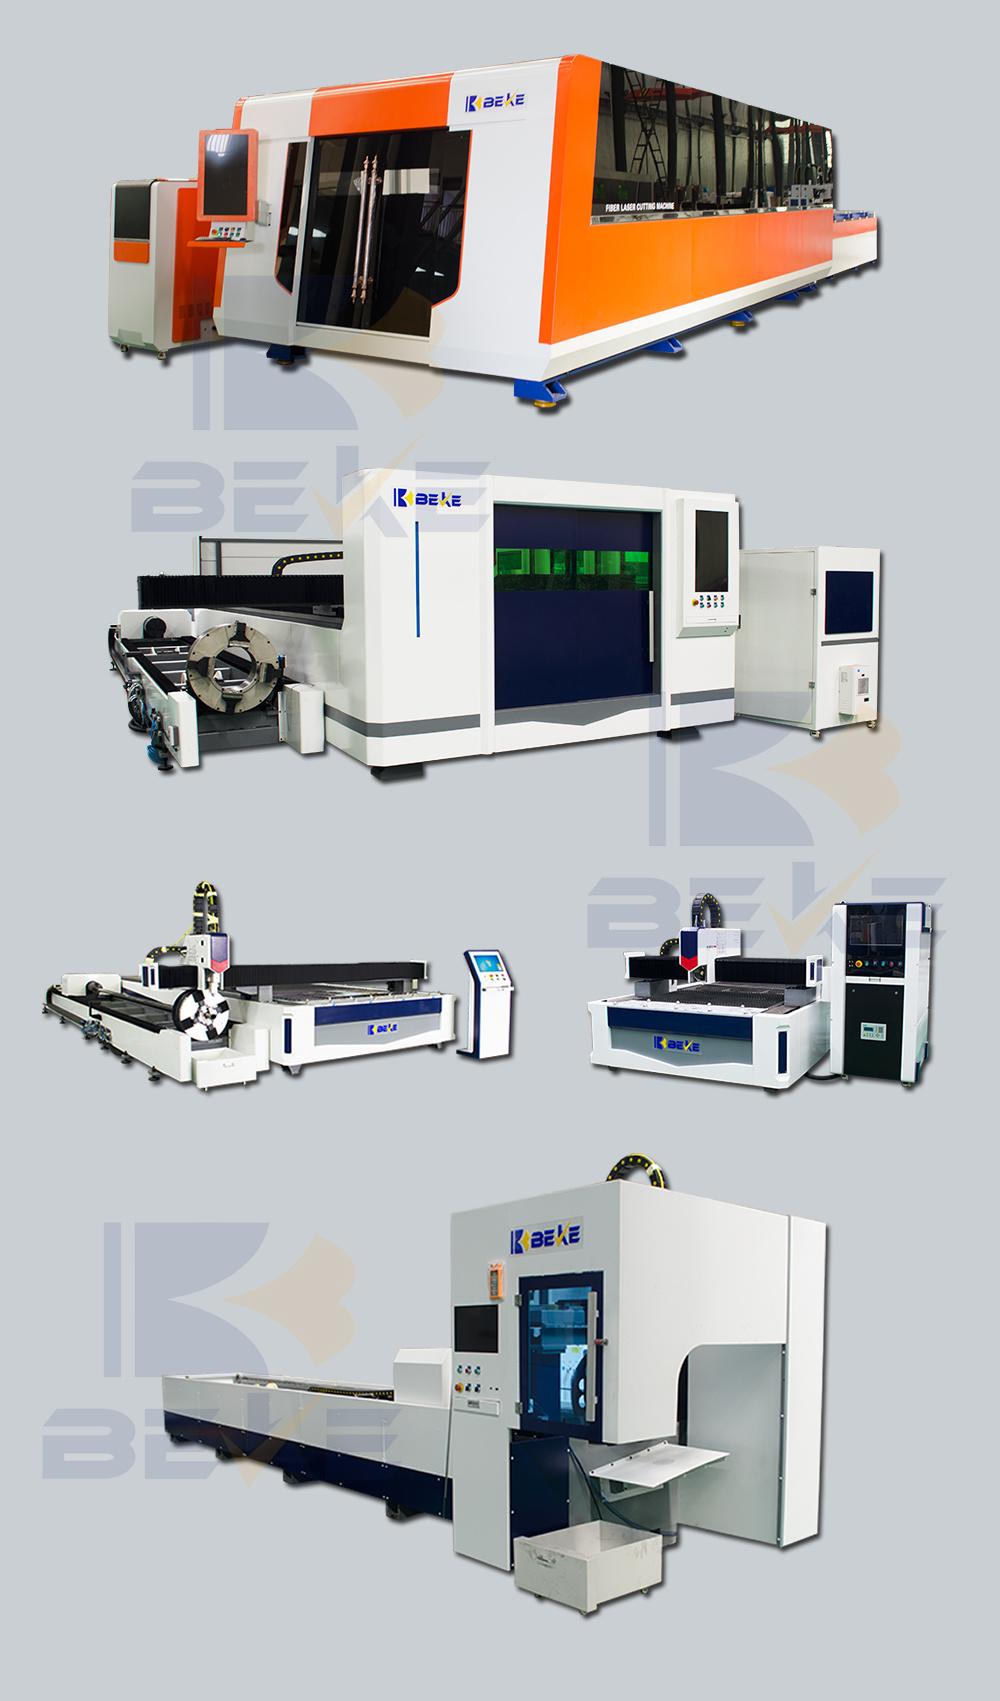 Nanjing Beke High Performance 4015 Round Closed Sheet Metal Laser Cutter